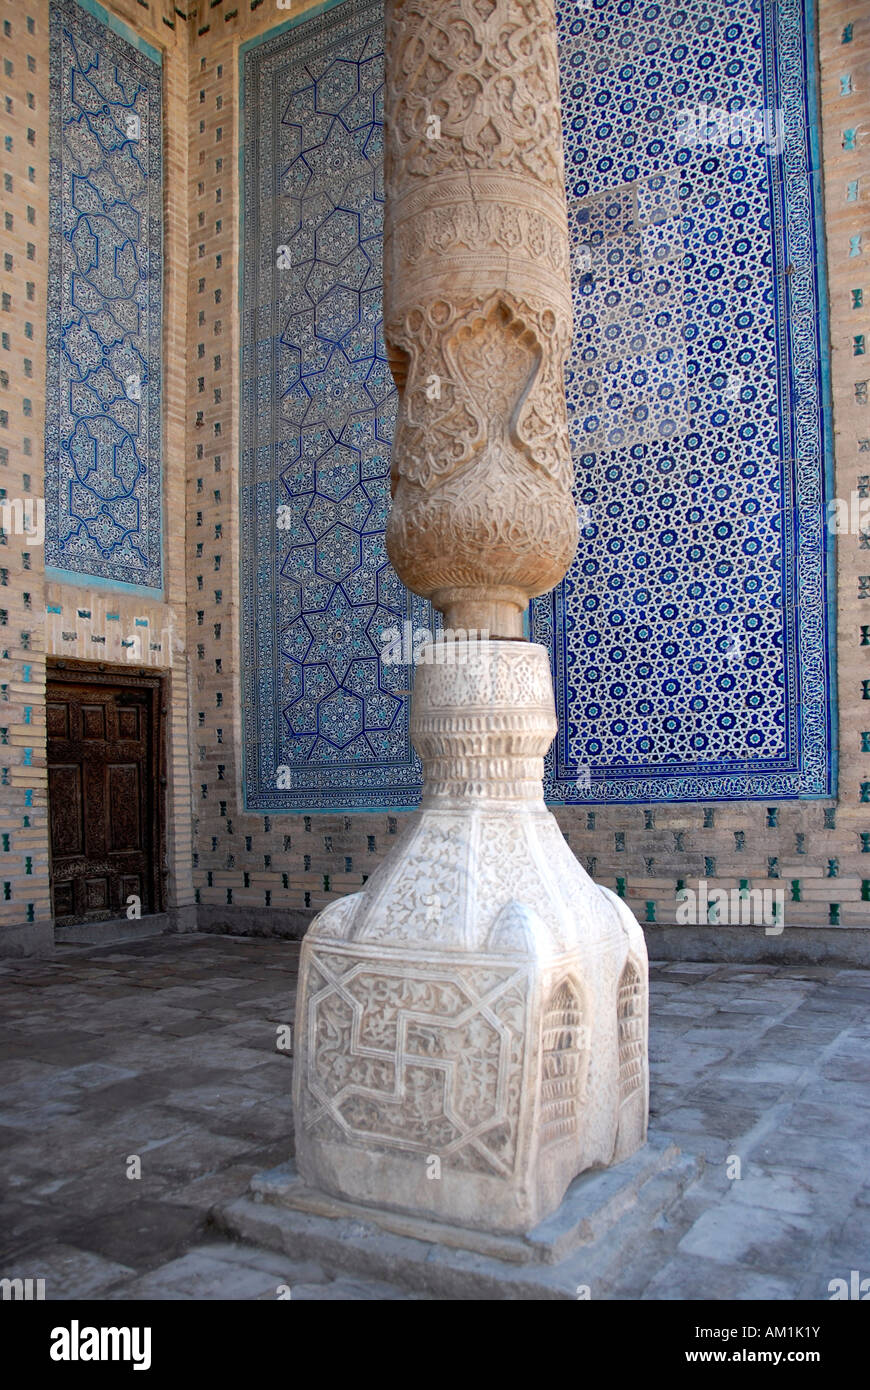 Columna de madera tallada, sobre un zócalo de mármol decorado con paredes decoradas con fino azul maiolica Tash Hauli Palace Khiva Uzbekistán Foto de stock